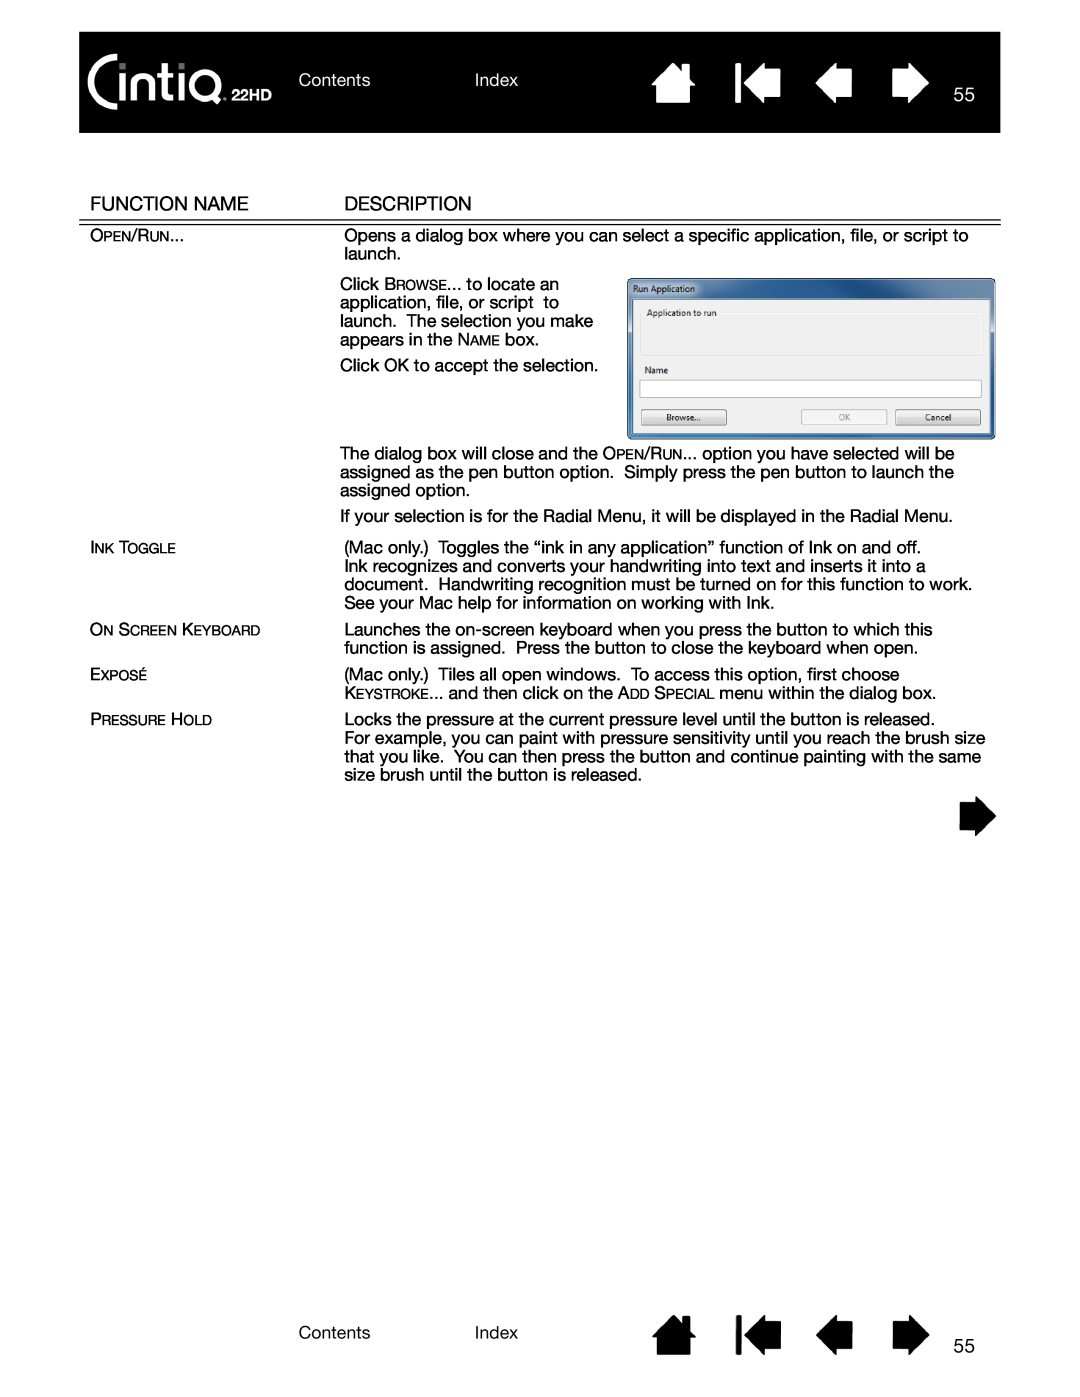 Wacom DTK-2200 user manual Function Name, Description, ContentsIndex 